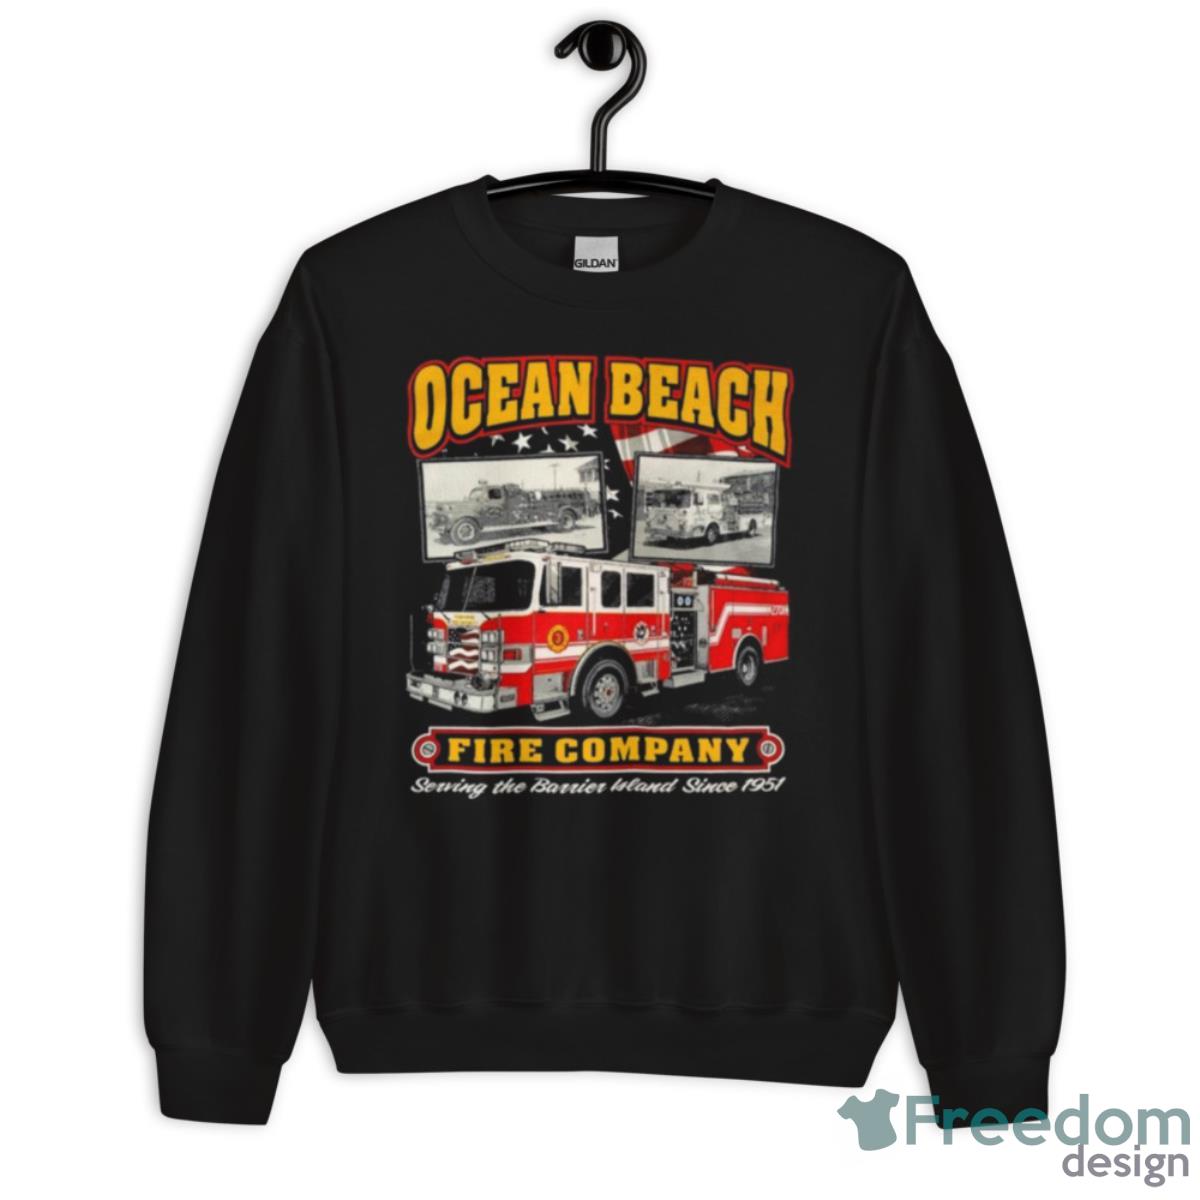 Ocean Beach Fire Company Serving The Berrien Bland Since 1951 Shirt